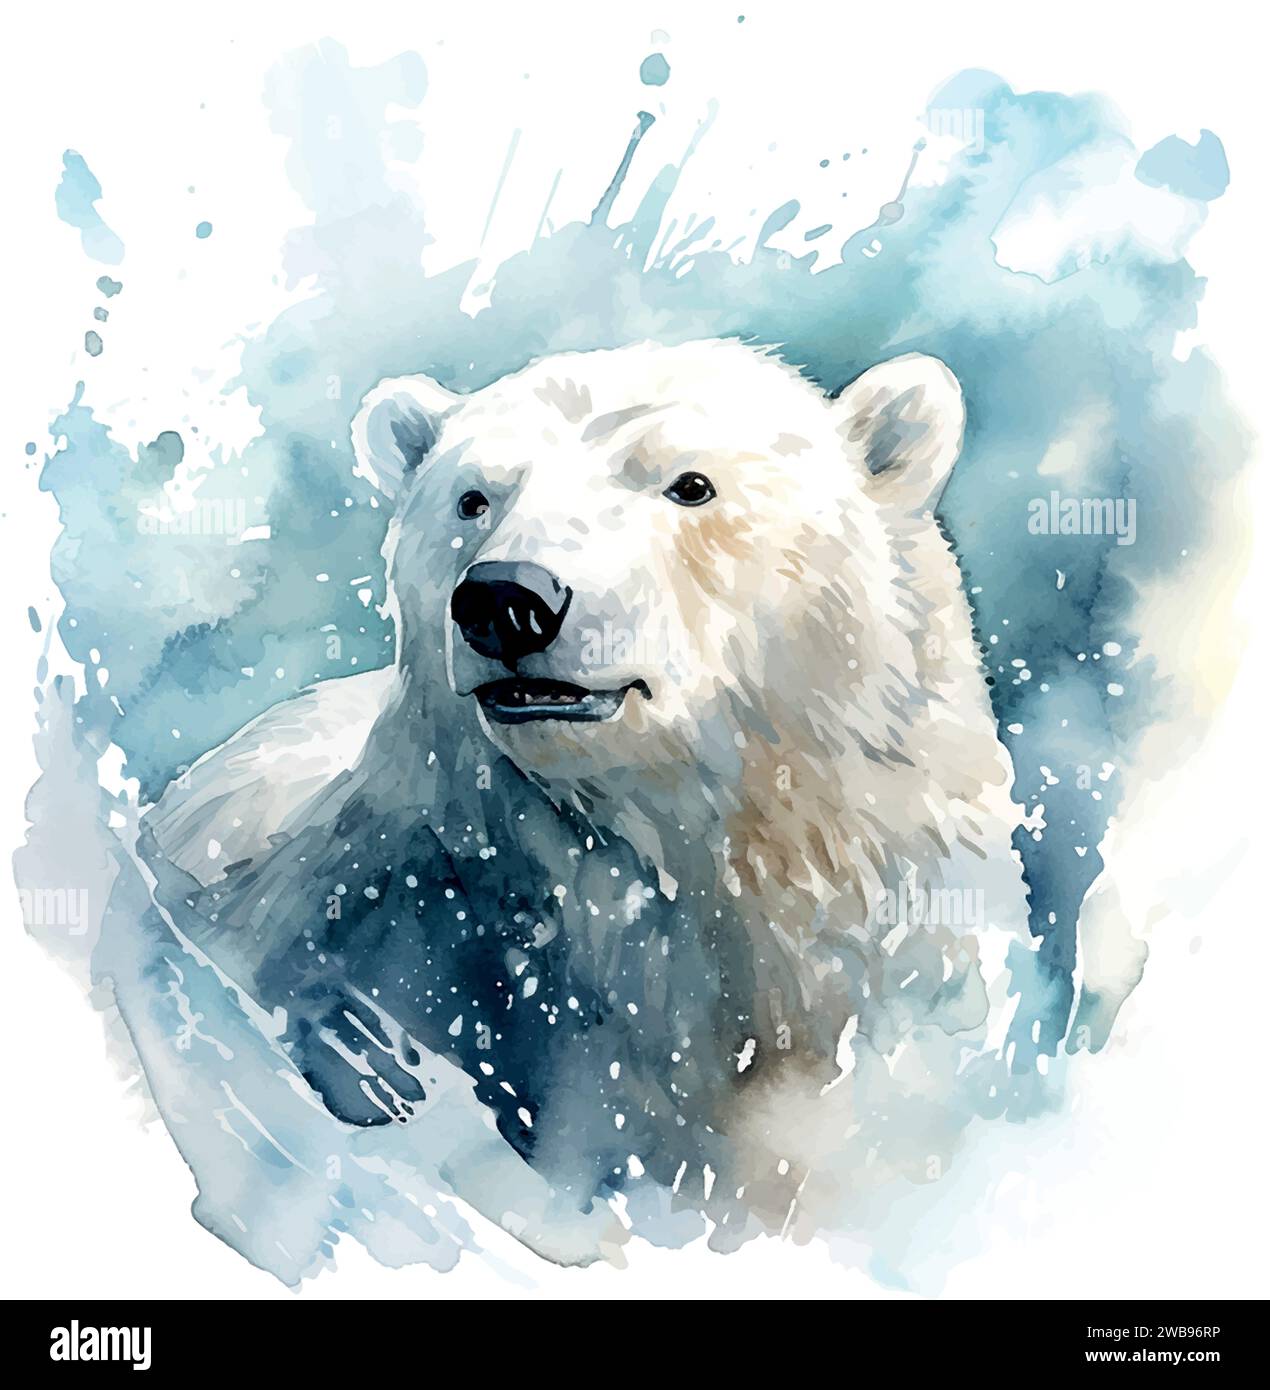 Eisbär Aquarell Kinderbuch Illustration Stil auf weiß Stock Vektor